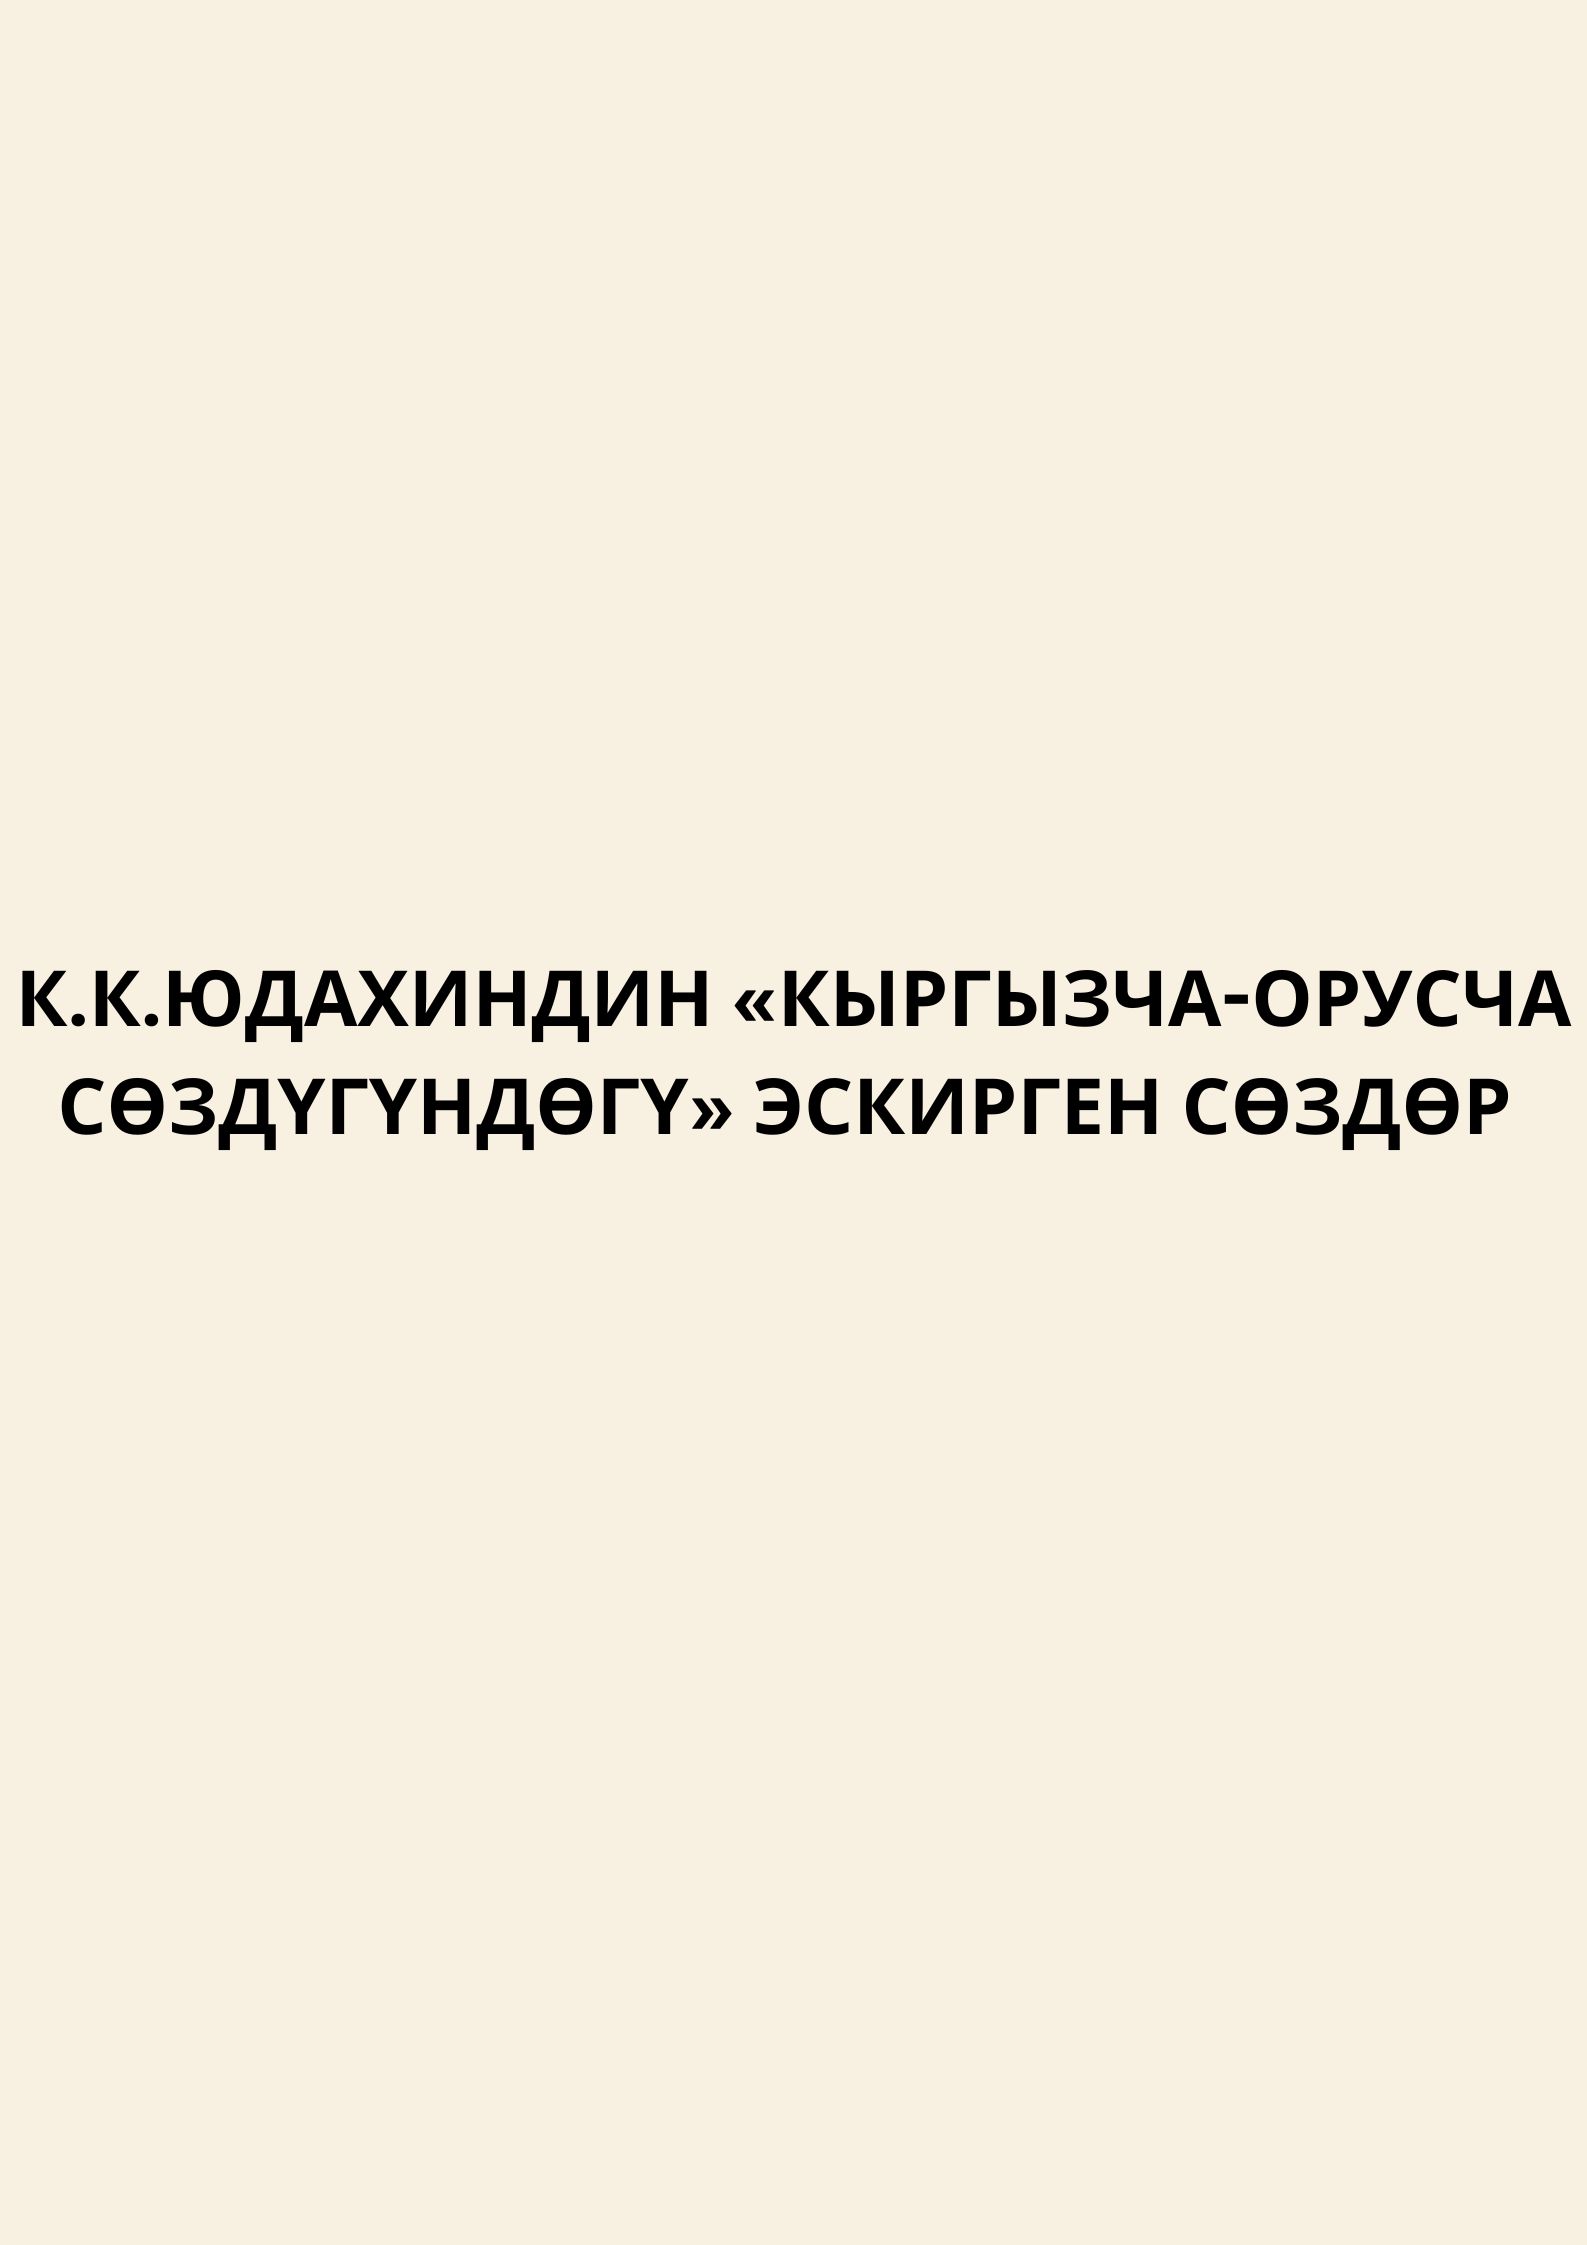 Архаизмы в «Кыргызско-русском словаре» К. К. Юдахина картинка